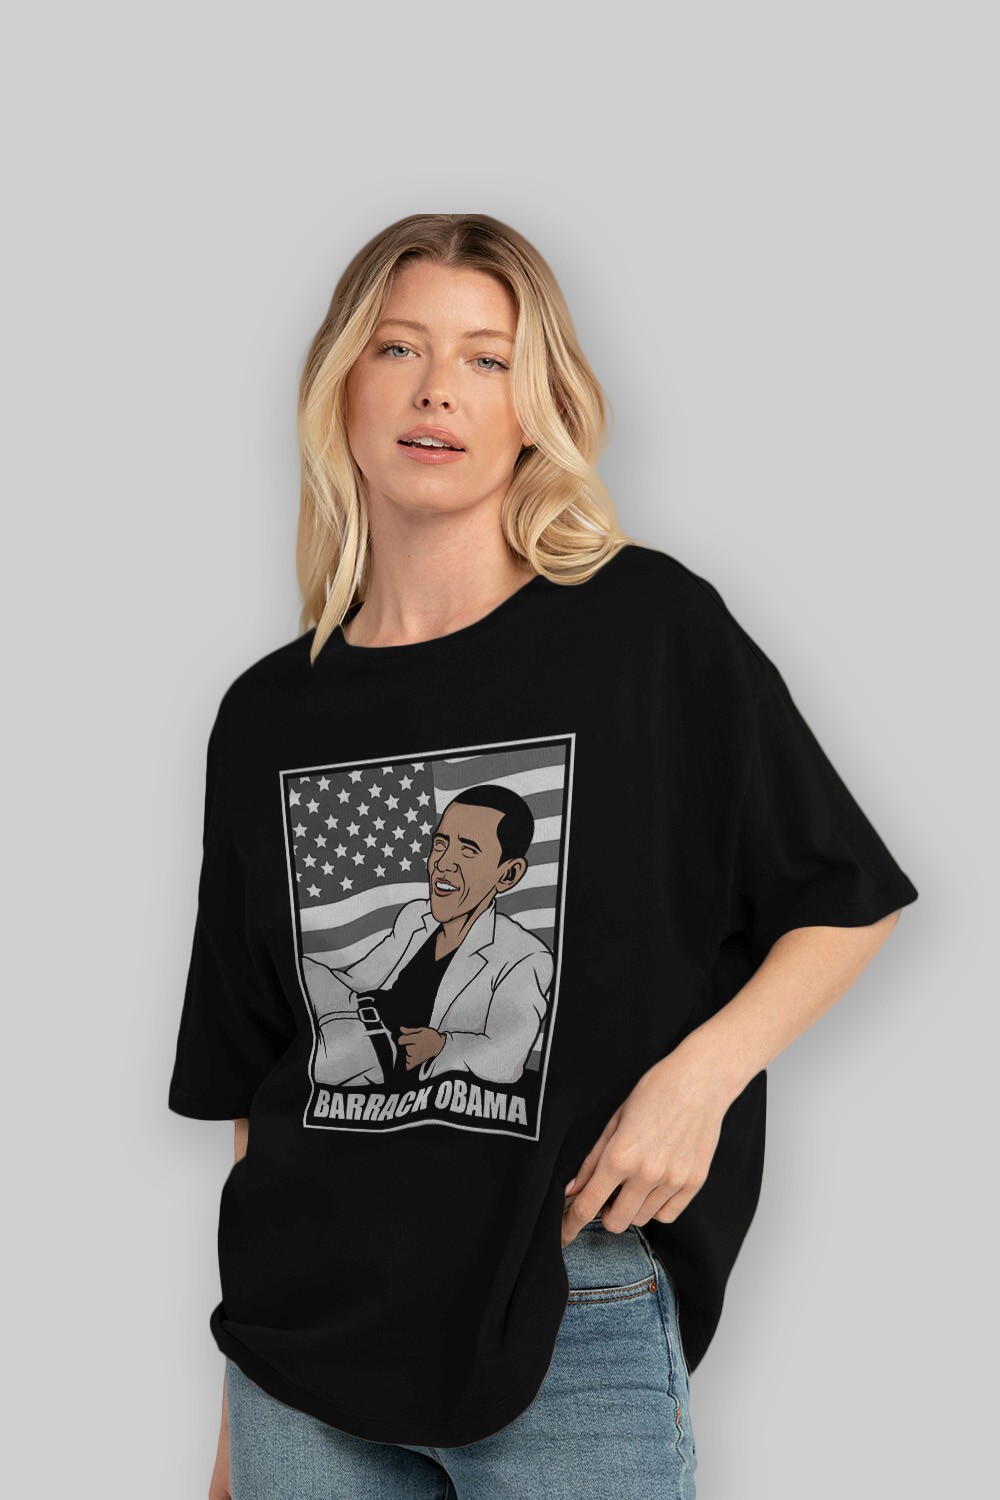 Obama Thriller Ön Baskılı Oversize t-shirt Erkek Kadın Unisex %100 Pamuk tişort